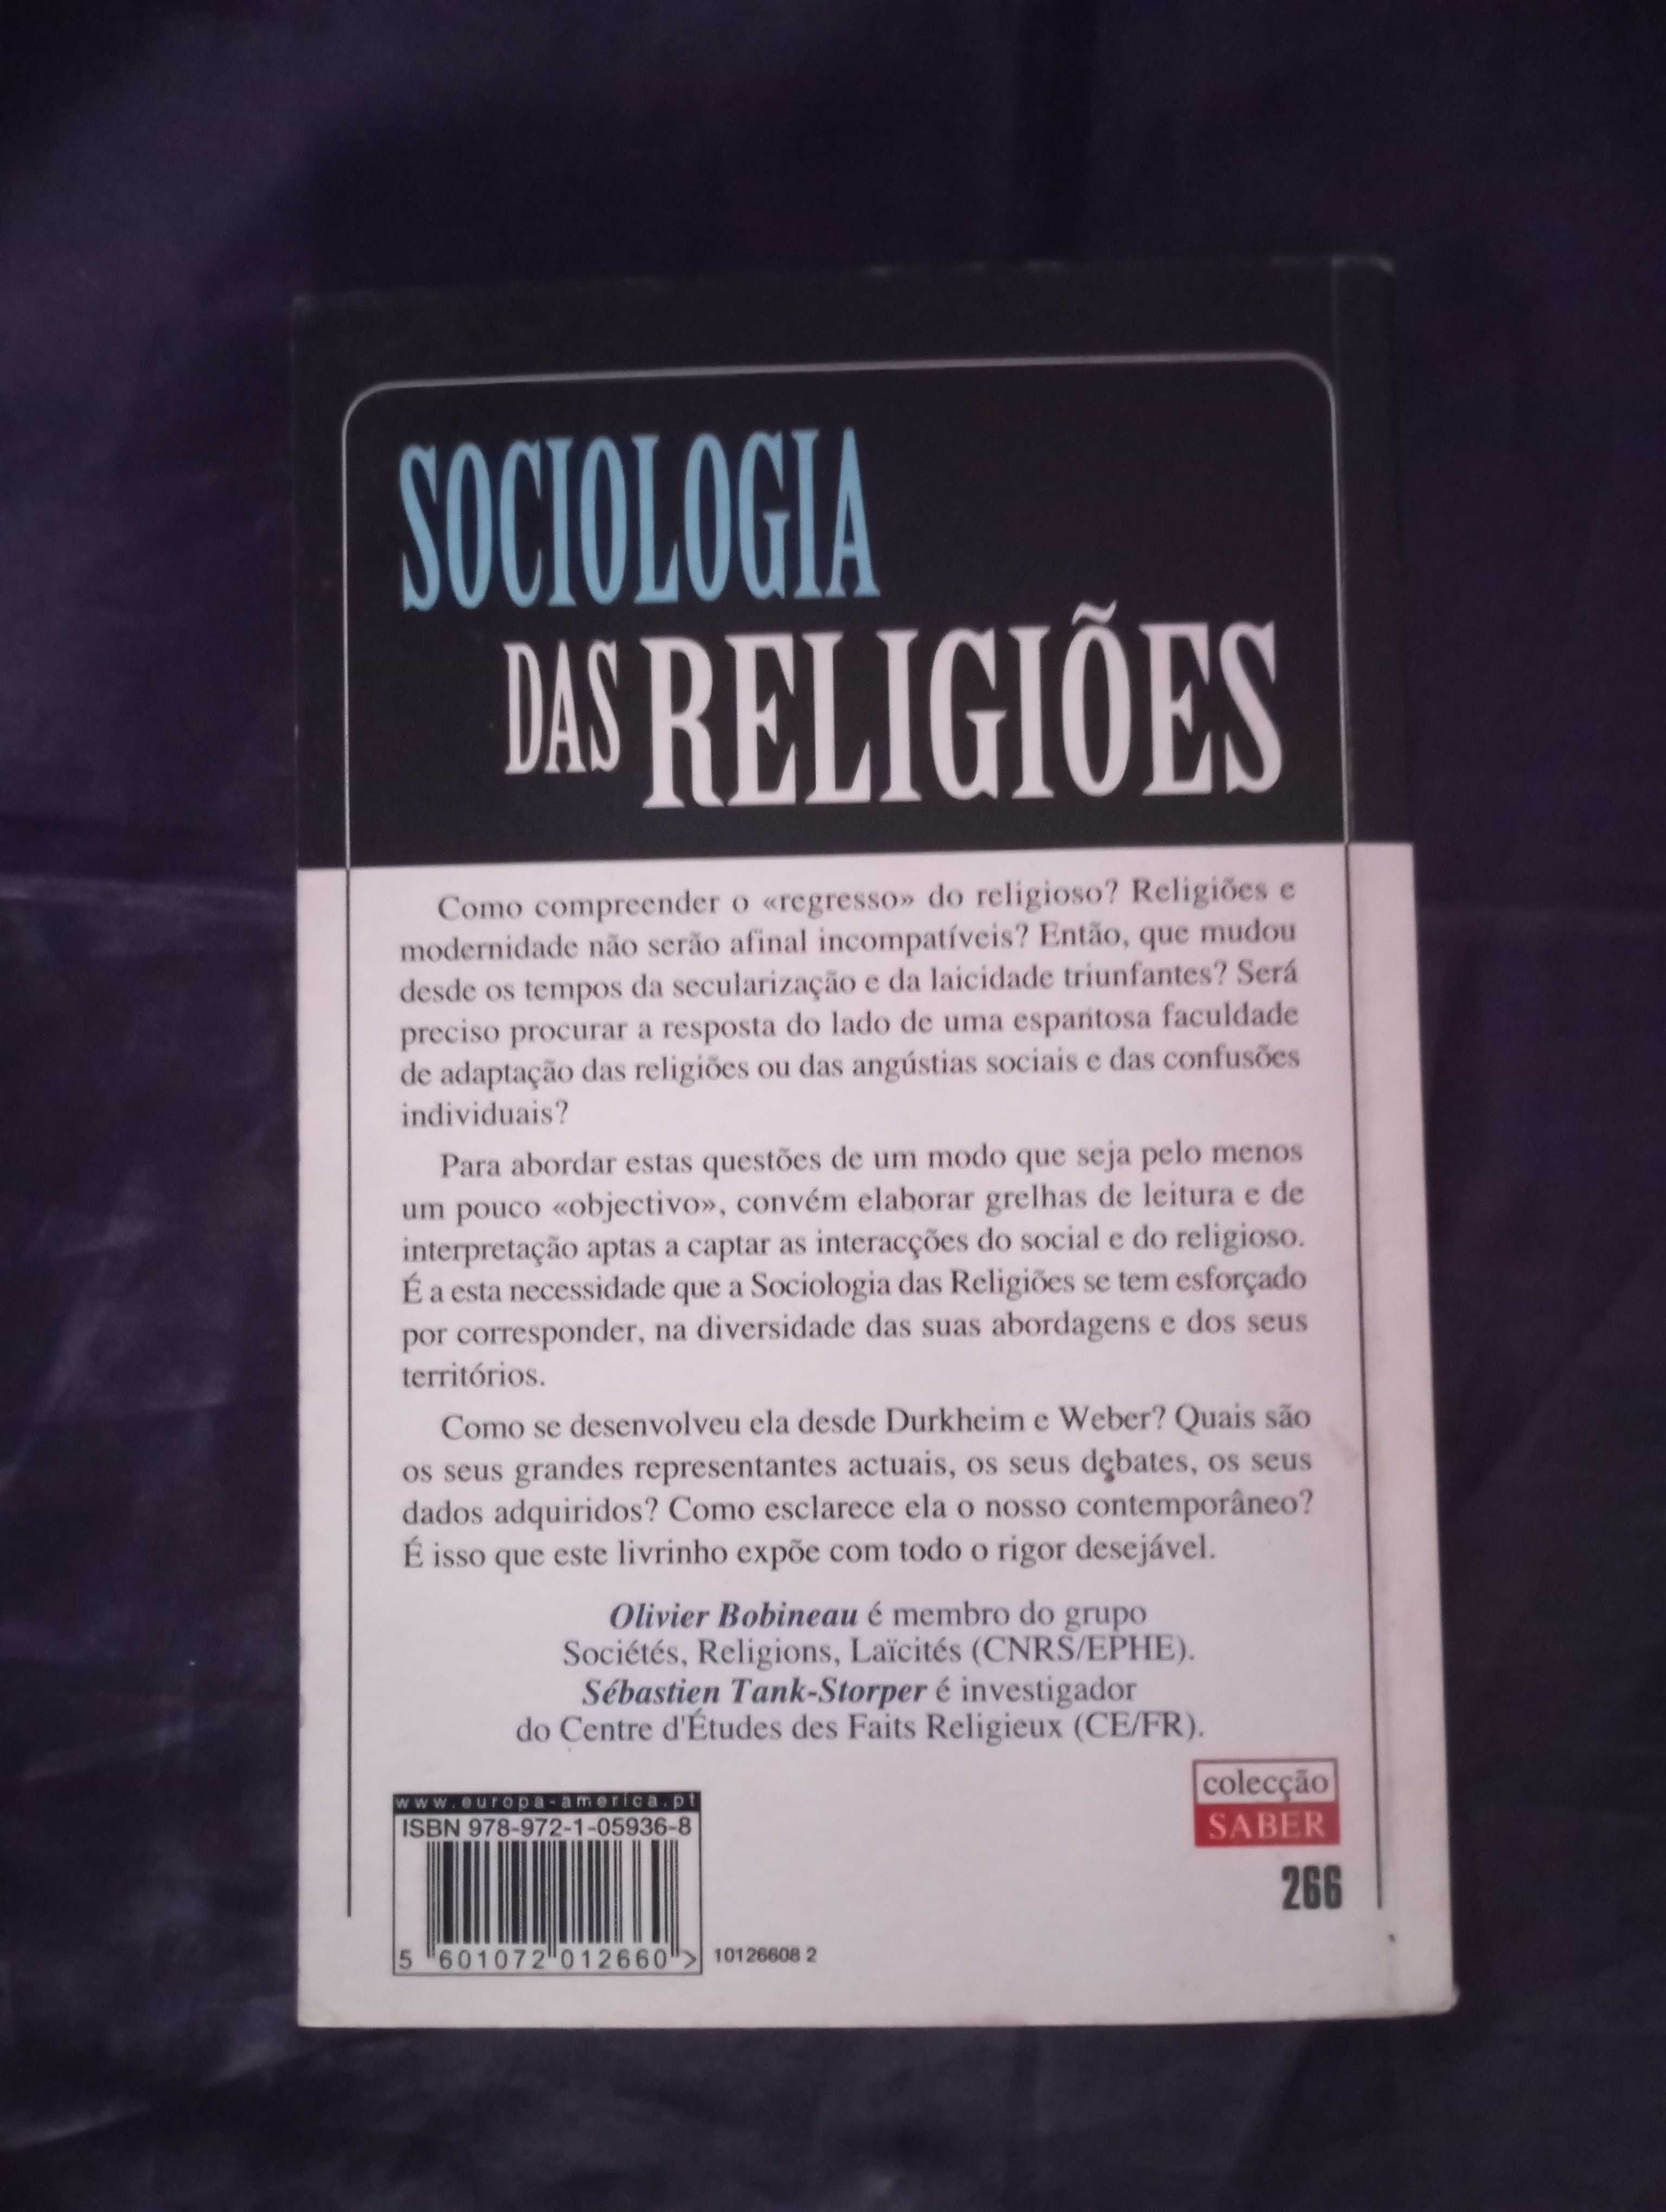 Sociologia das Religiões - Olivier Bobineau e Sébastian Tank-Storper